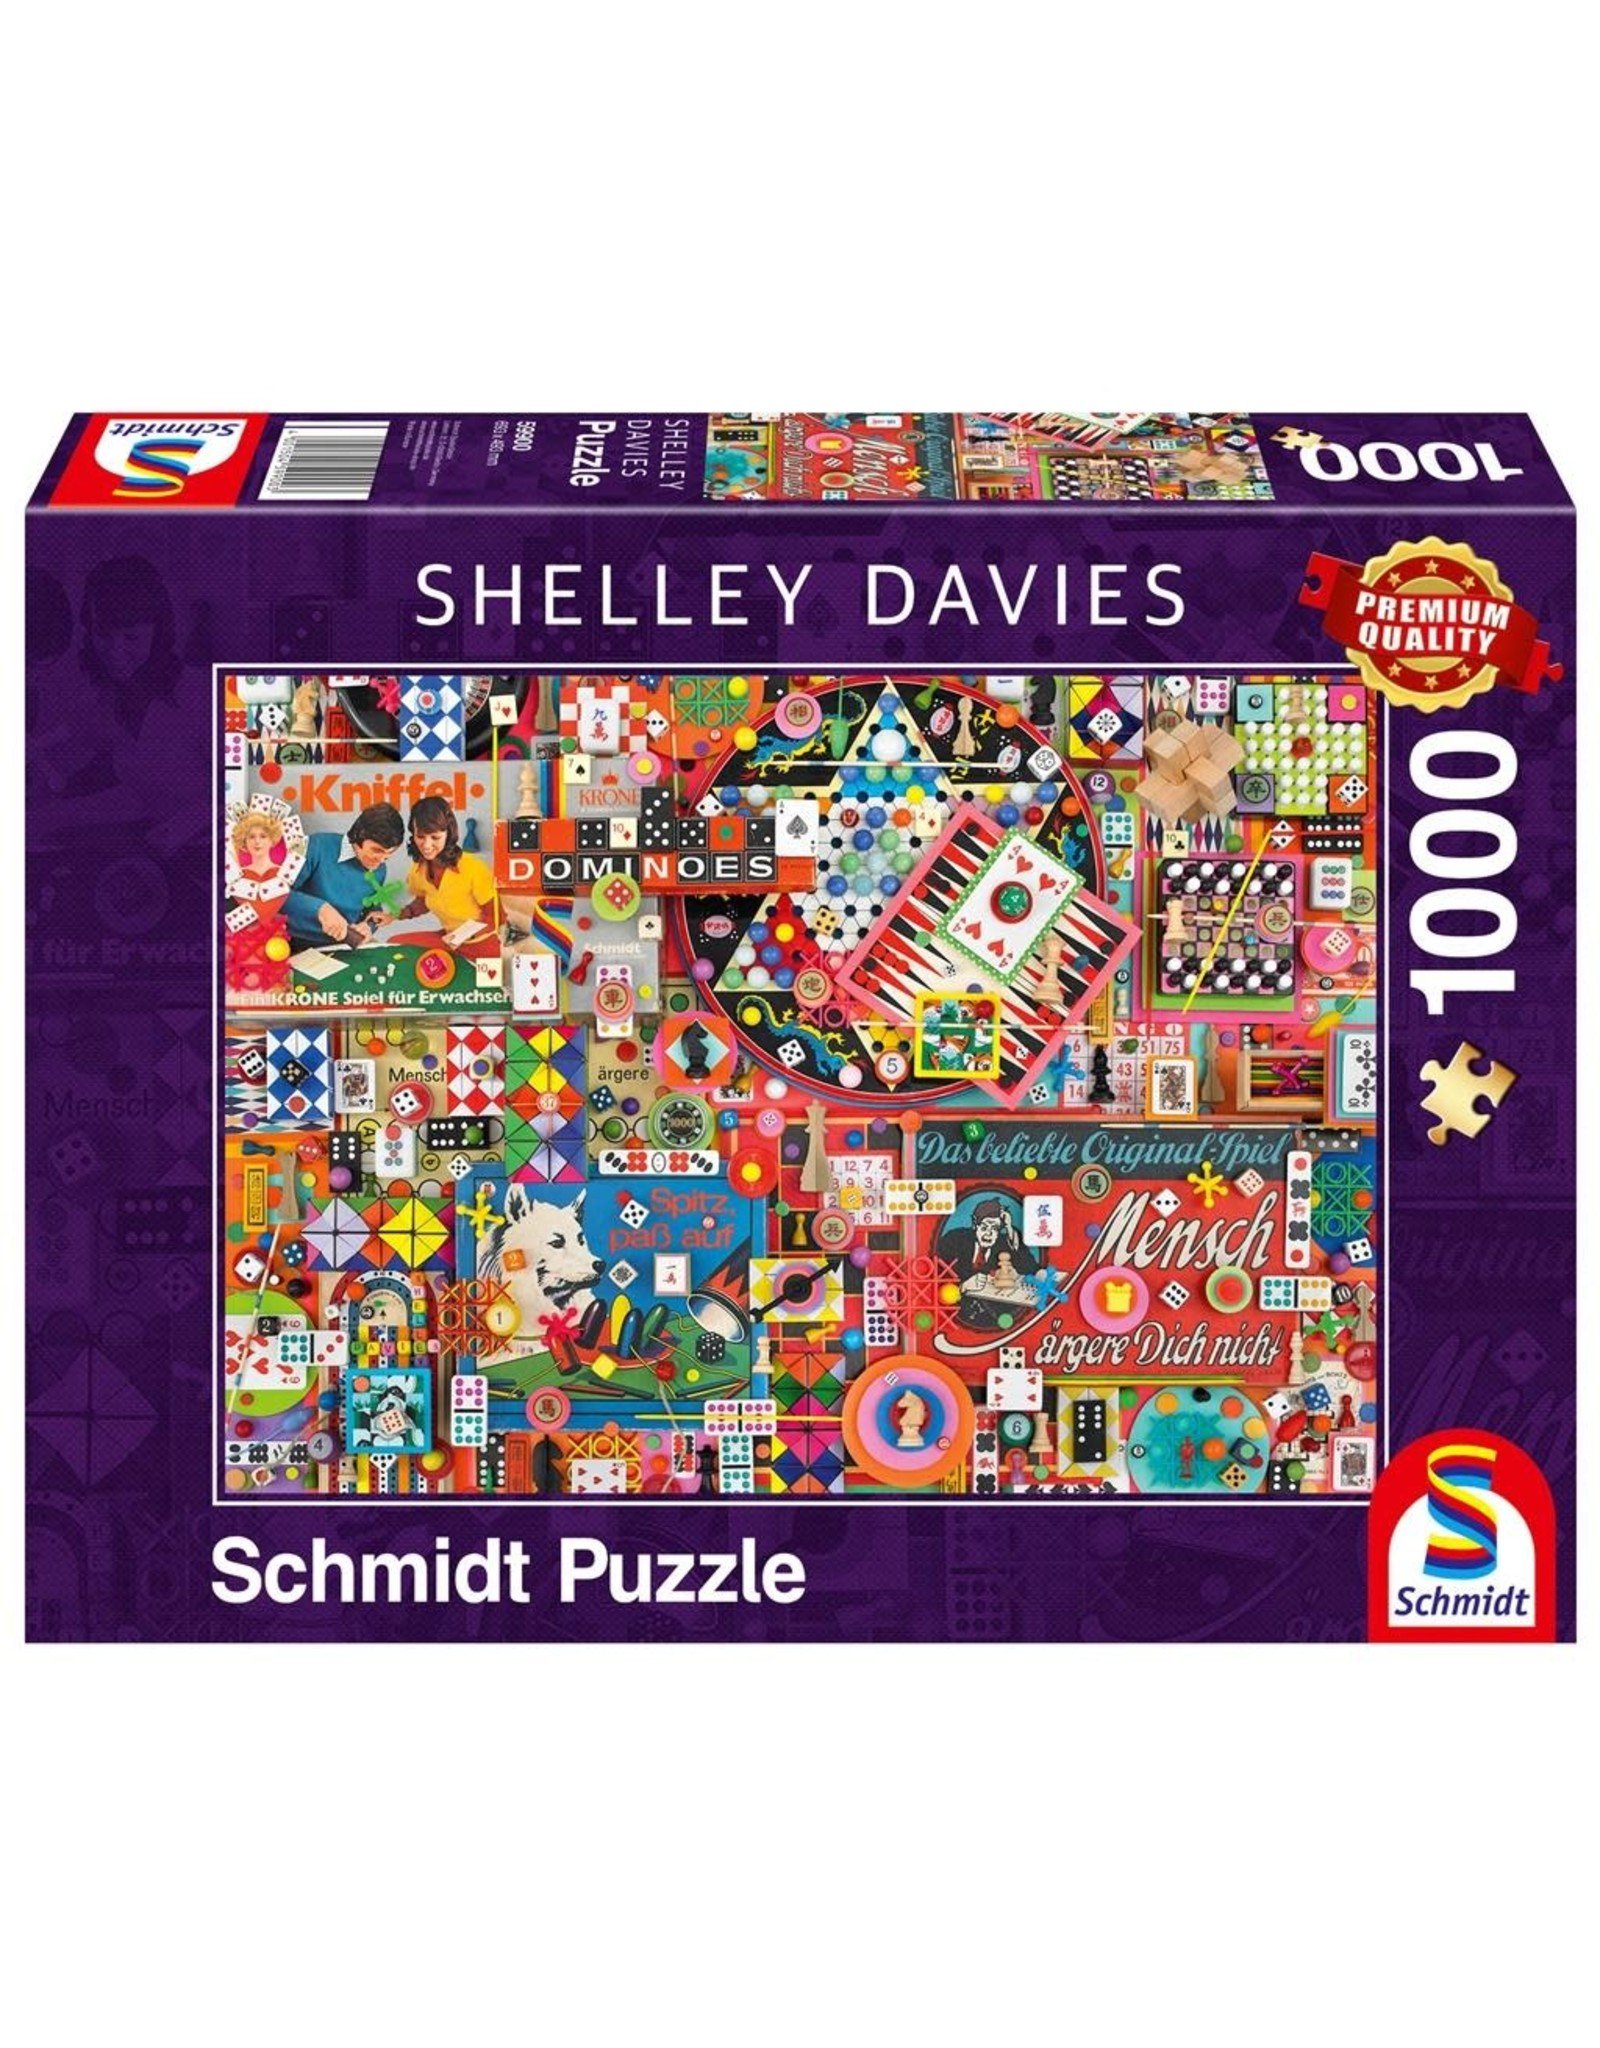 Schmidt Puzzle: Shelley Davies Games 1000 Pieces